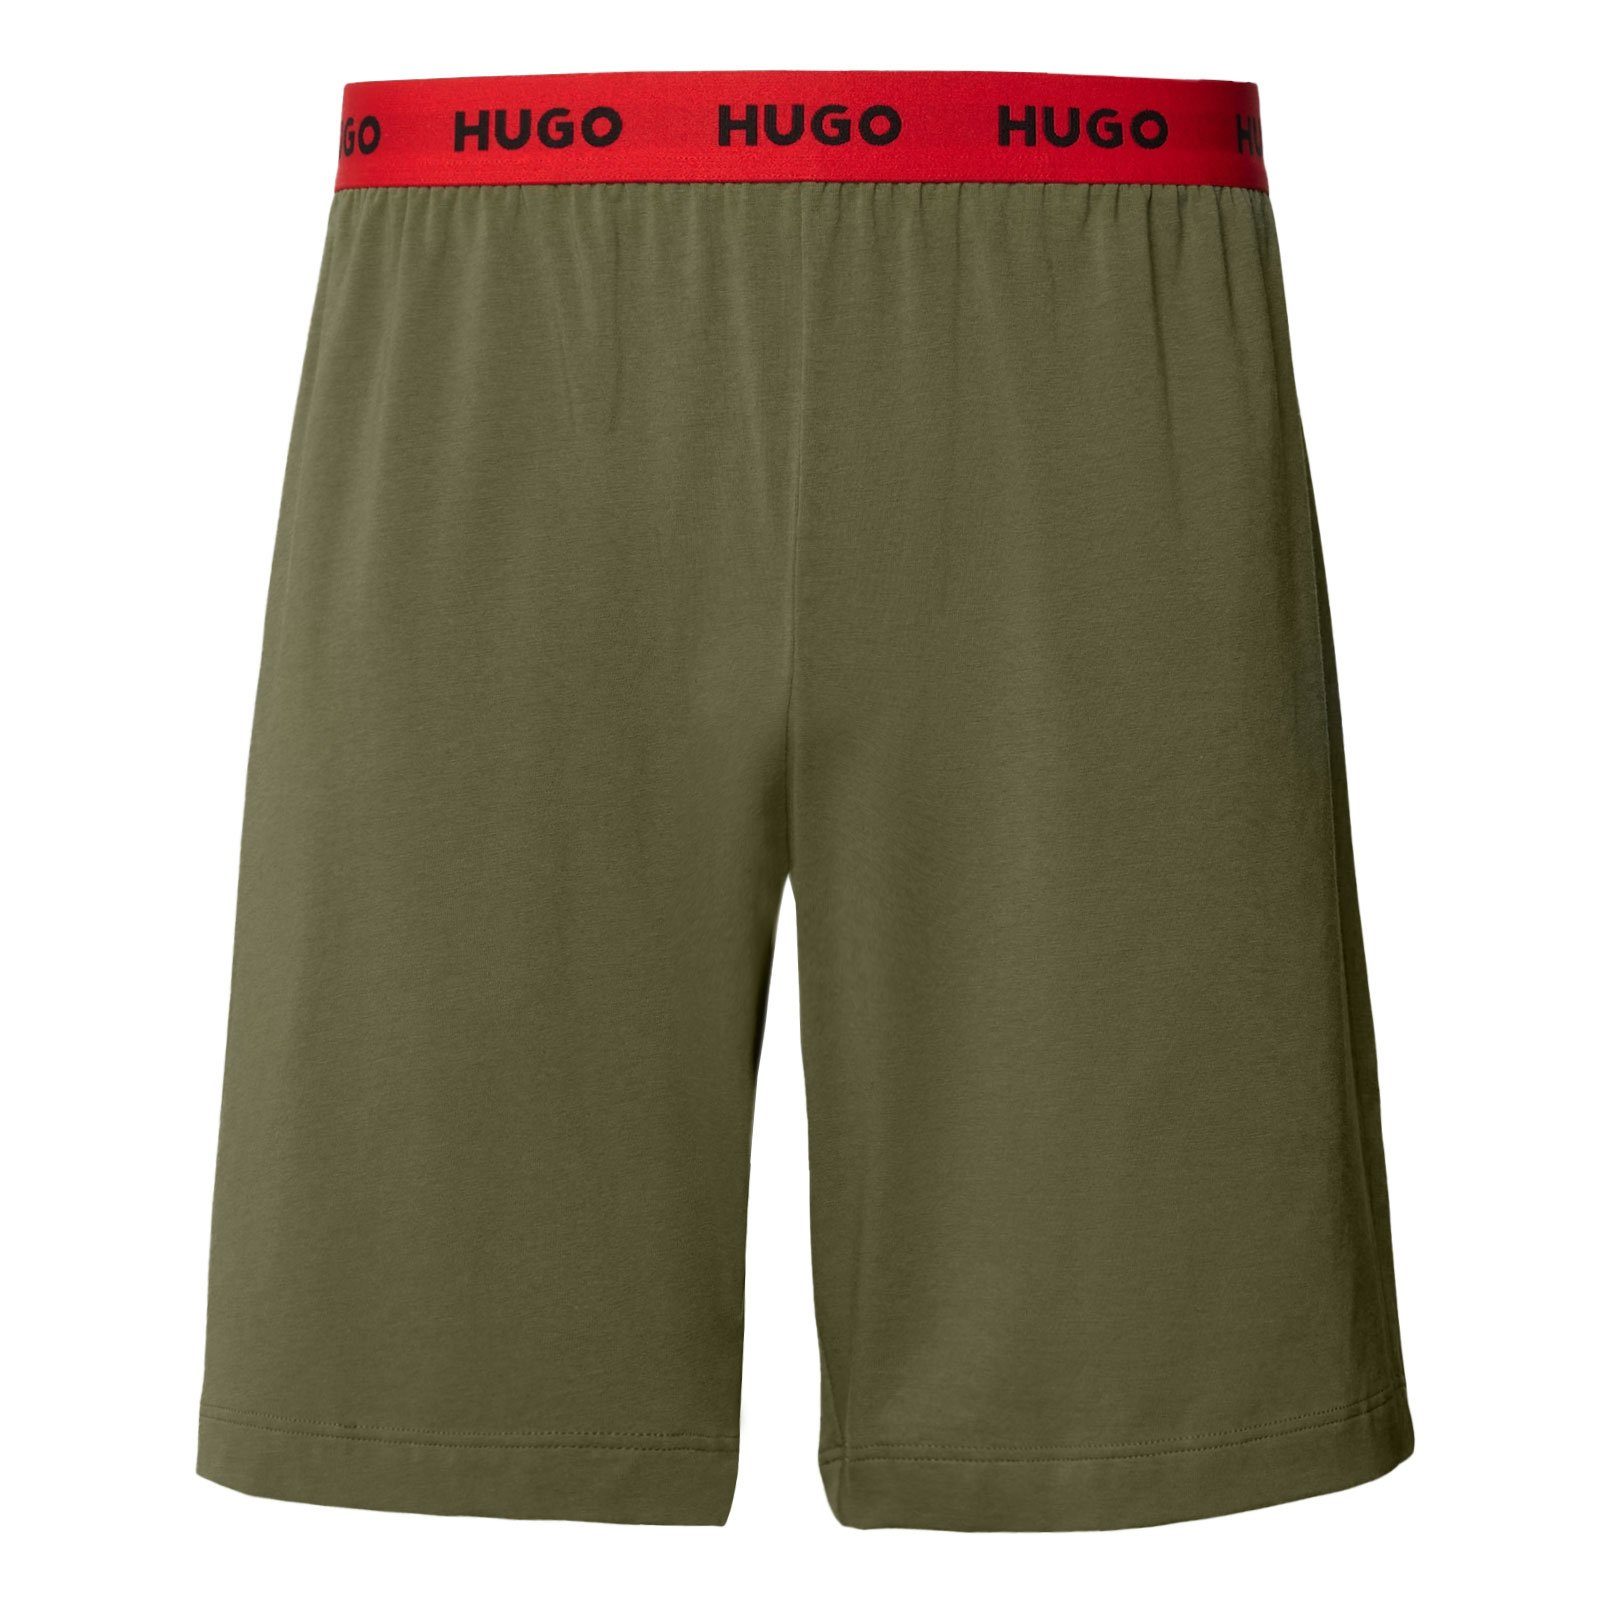 Pyjamashorts Linked HUGO Pant am umlaufendem mit Short Bund 345 open green Markenschriftzug